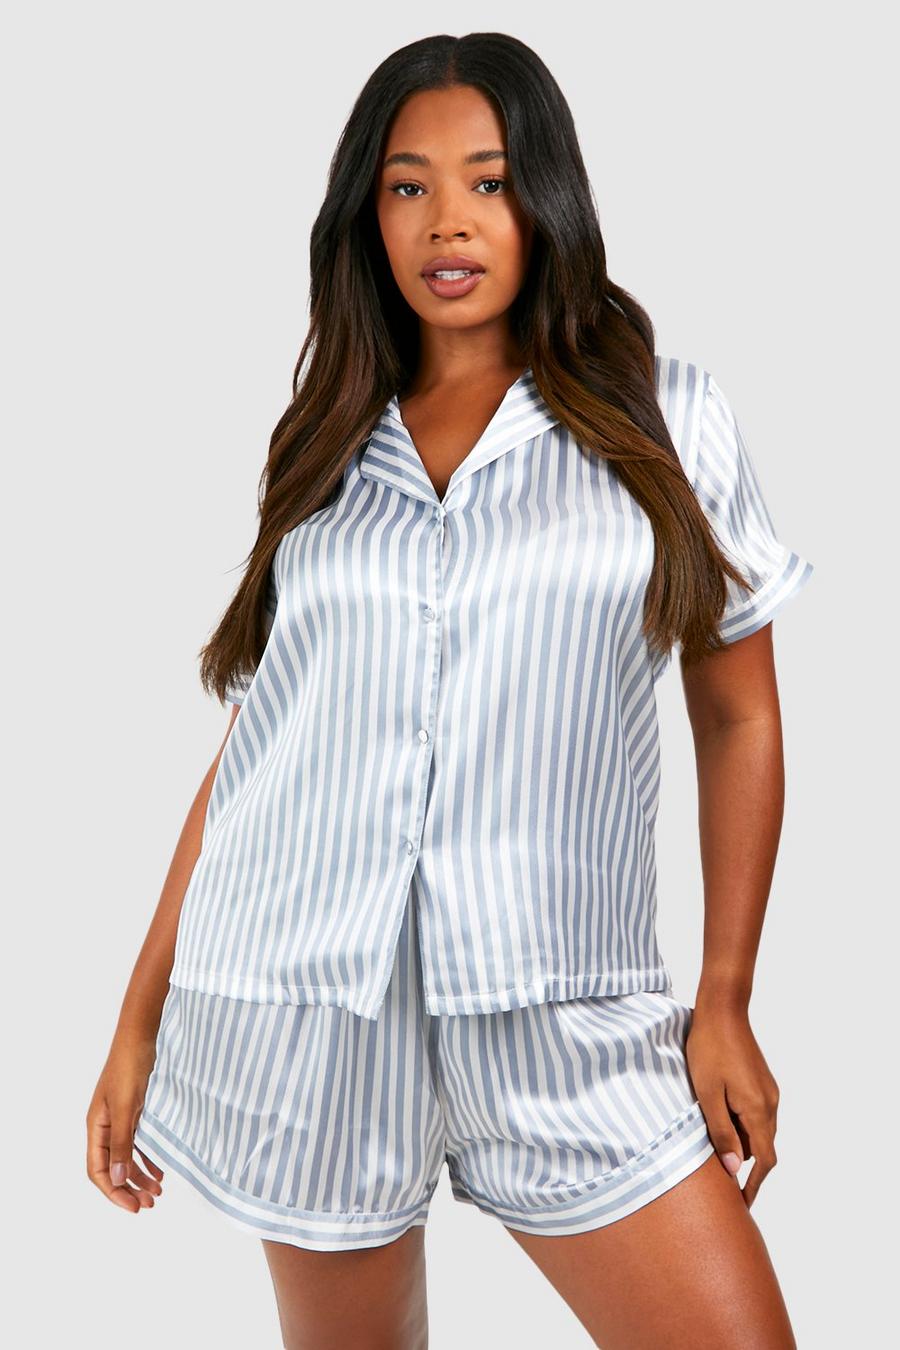  ZHOUXINGB Lingerie for Women Plus Size, Pajamas for